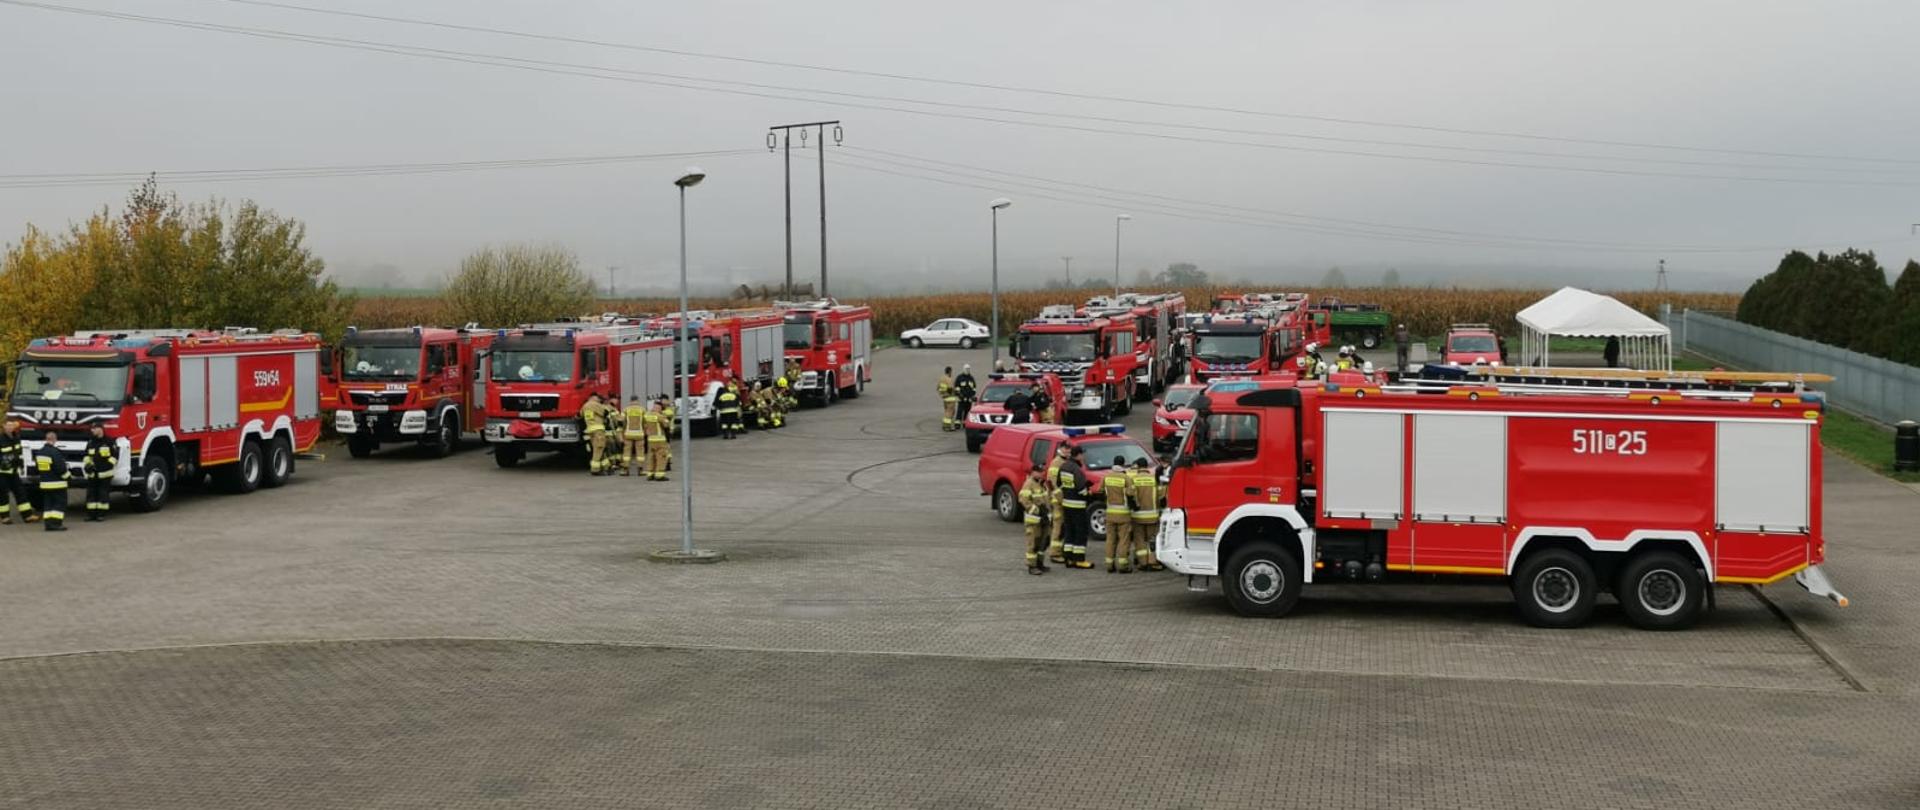 Samochody pożarnicze ciężarowe stoją na placu w punkcie przyjęcia sił i środków.